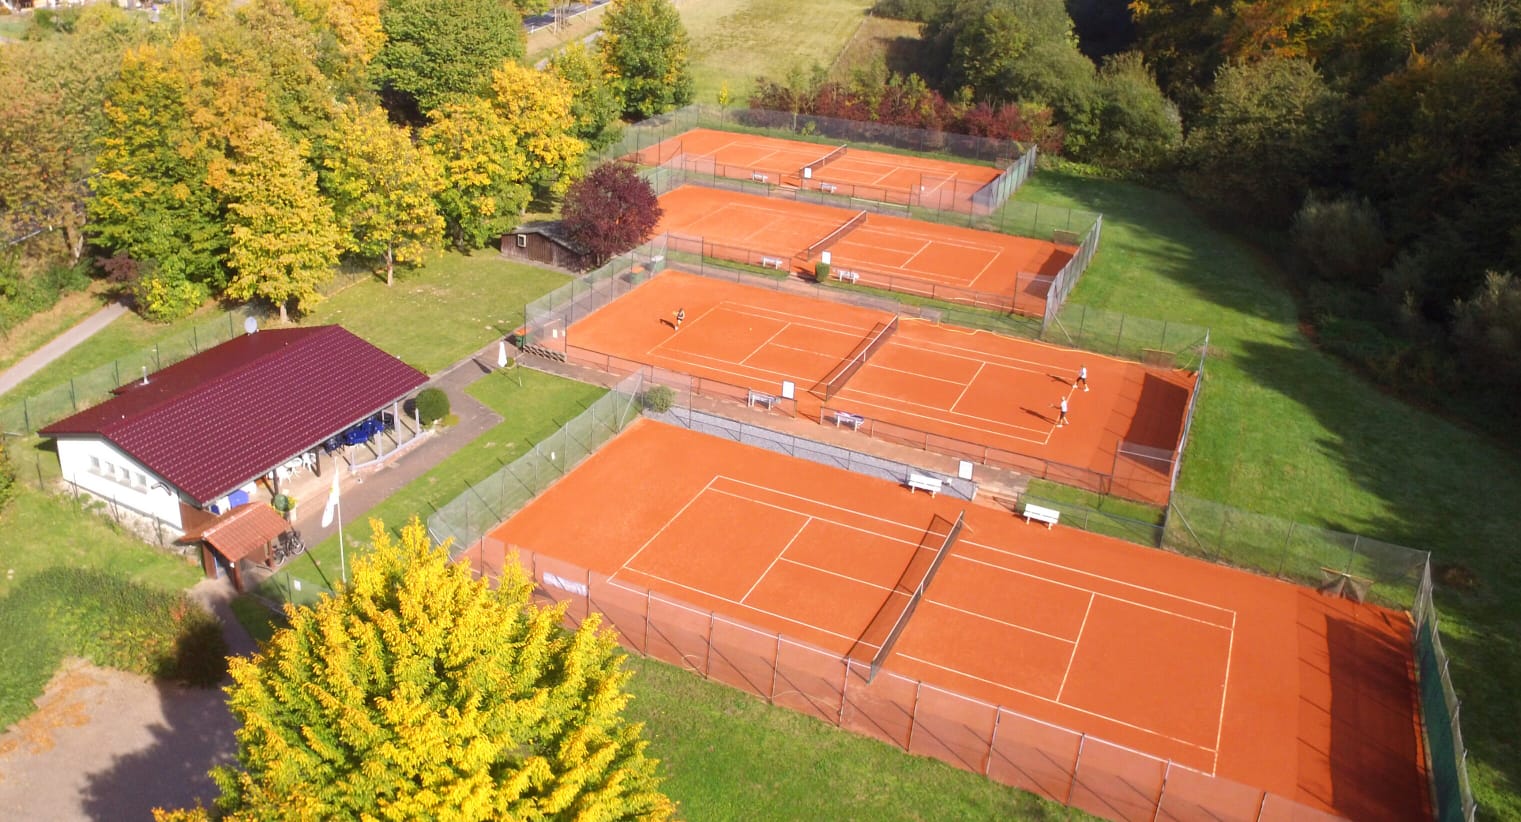 Tennisplätze von oben